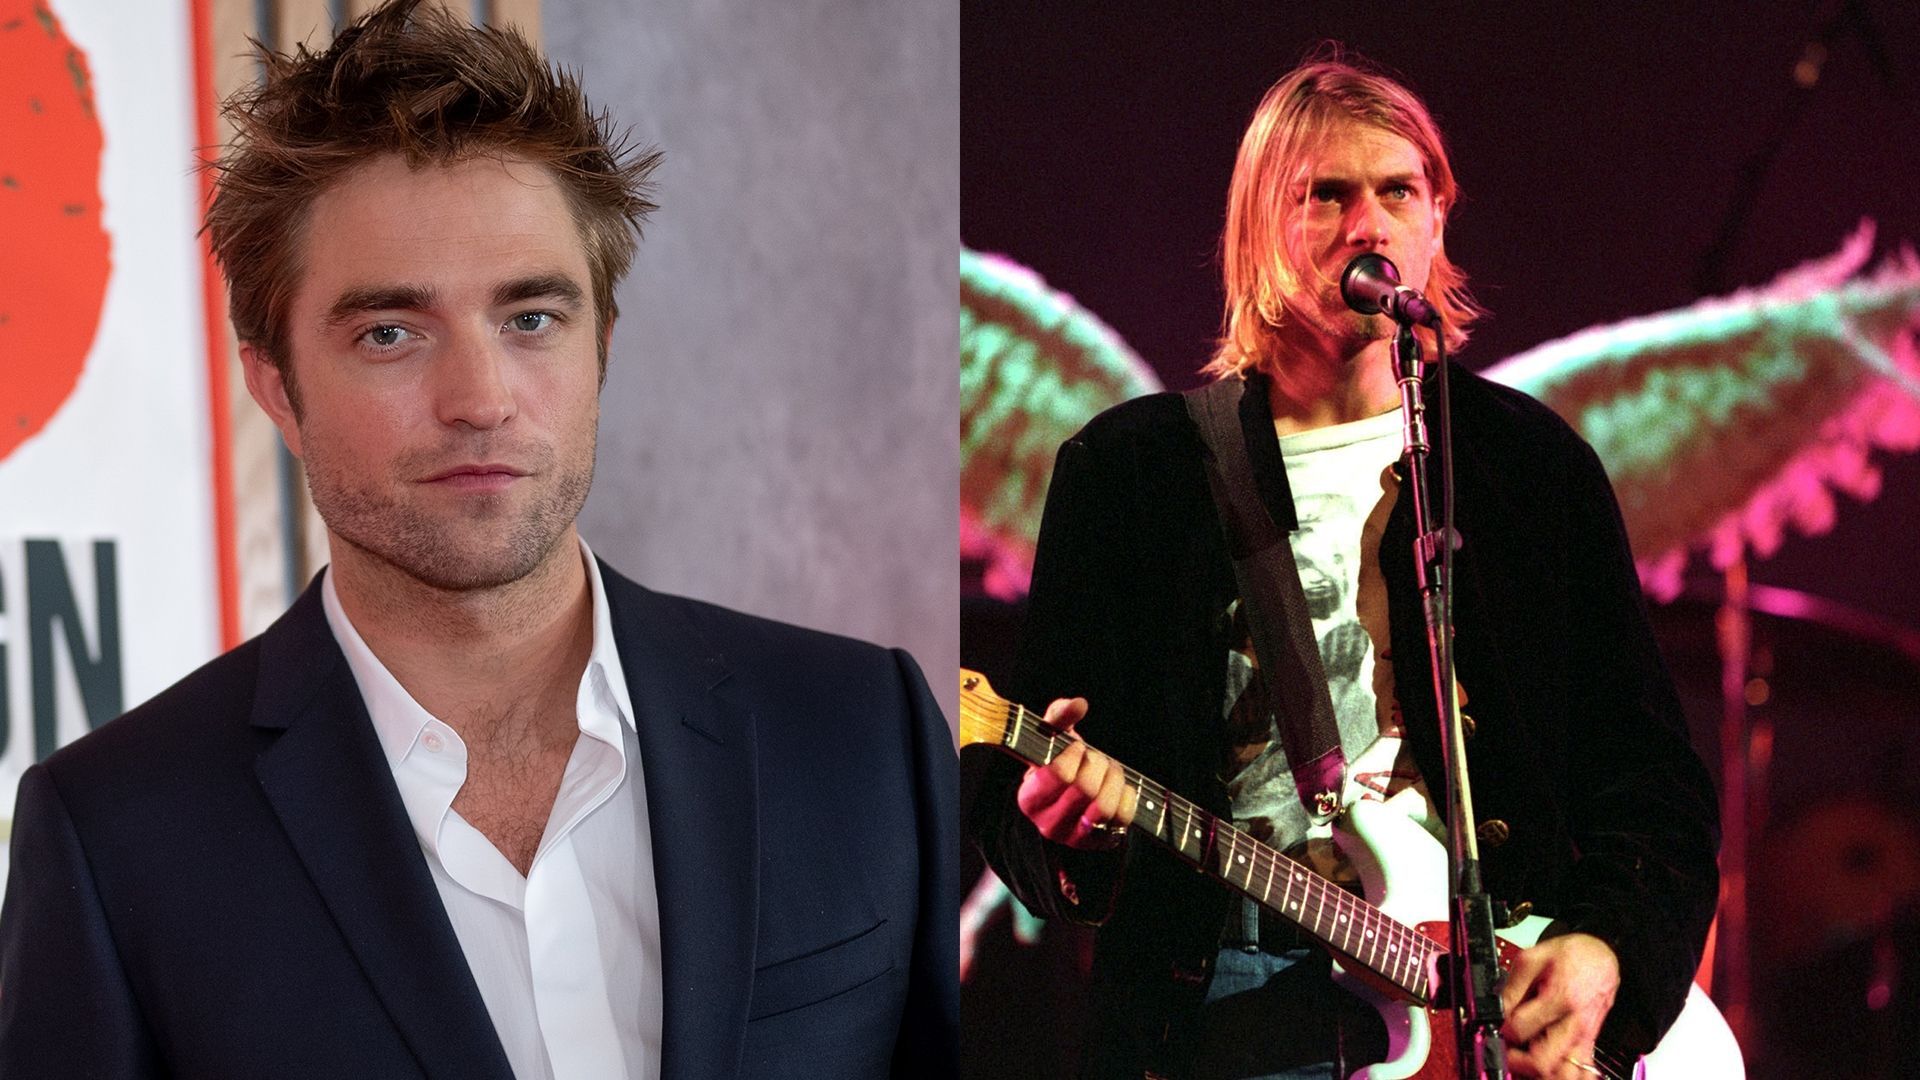 Robert Pattinson / Kurt Cobain